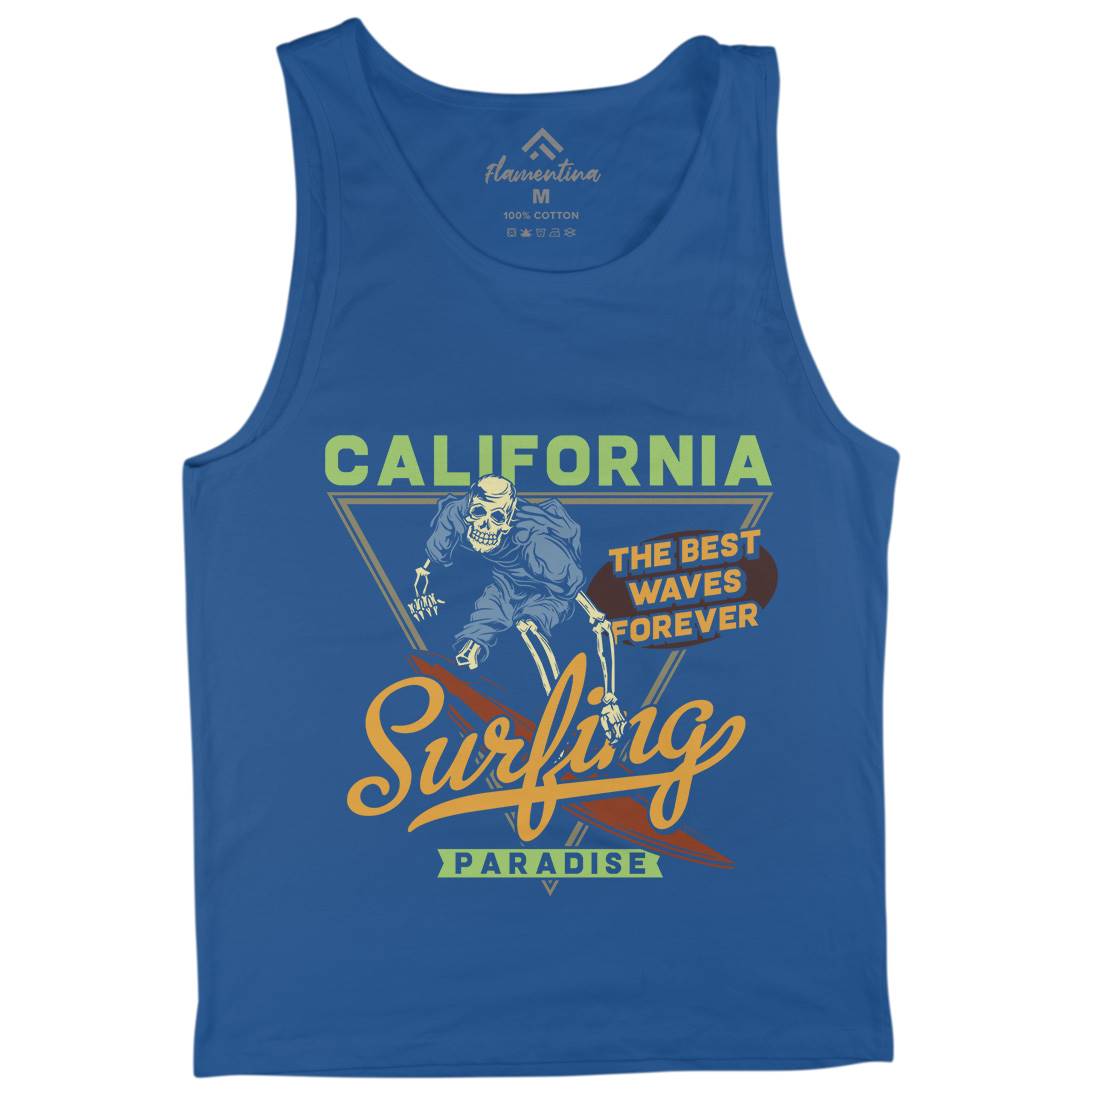 California Surfing Mens Tank Top Vest Surf B875